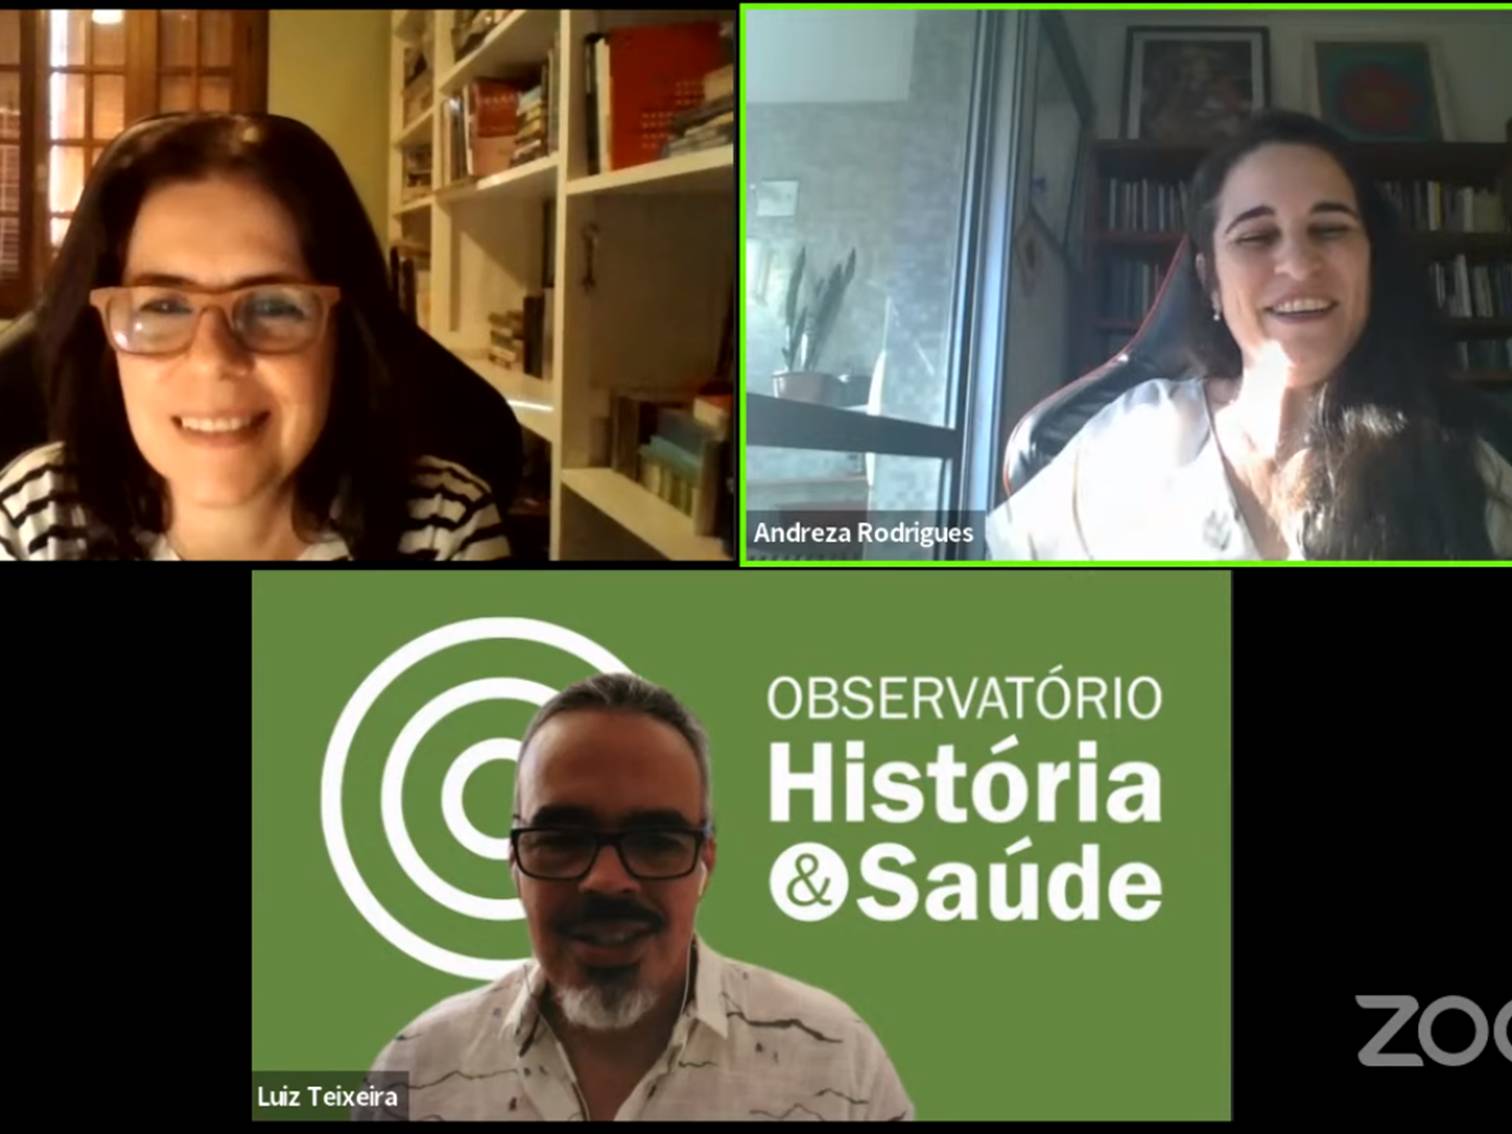 Andreza Rodrigues, Cristiane d’Avila, e Luiz Teixeira no Conversas Contemporâneas de 09/12.